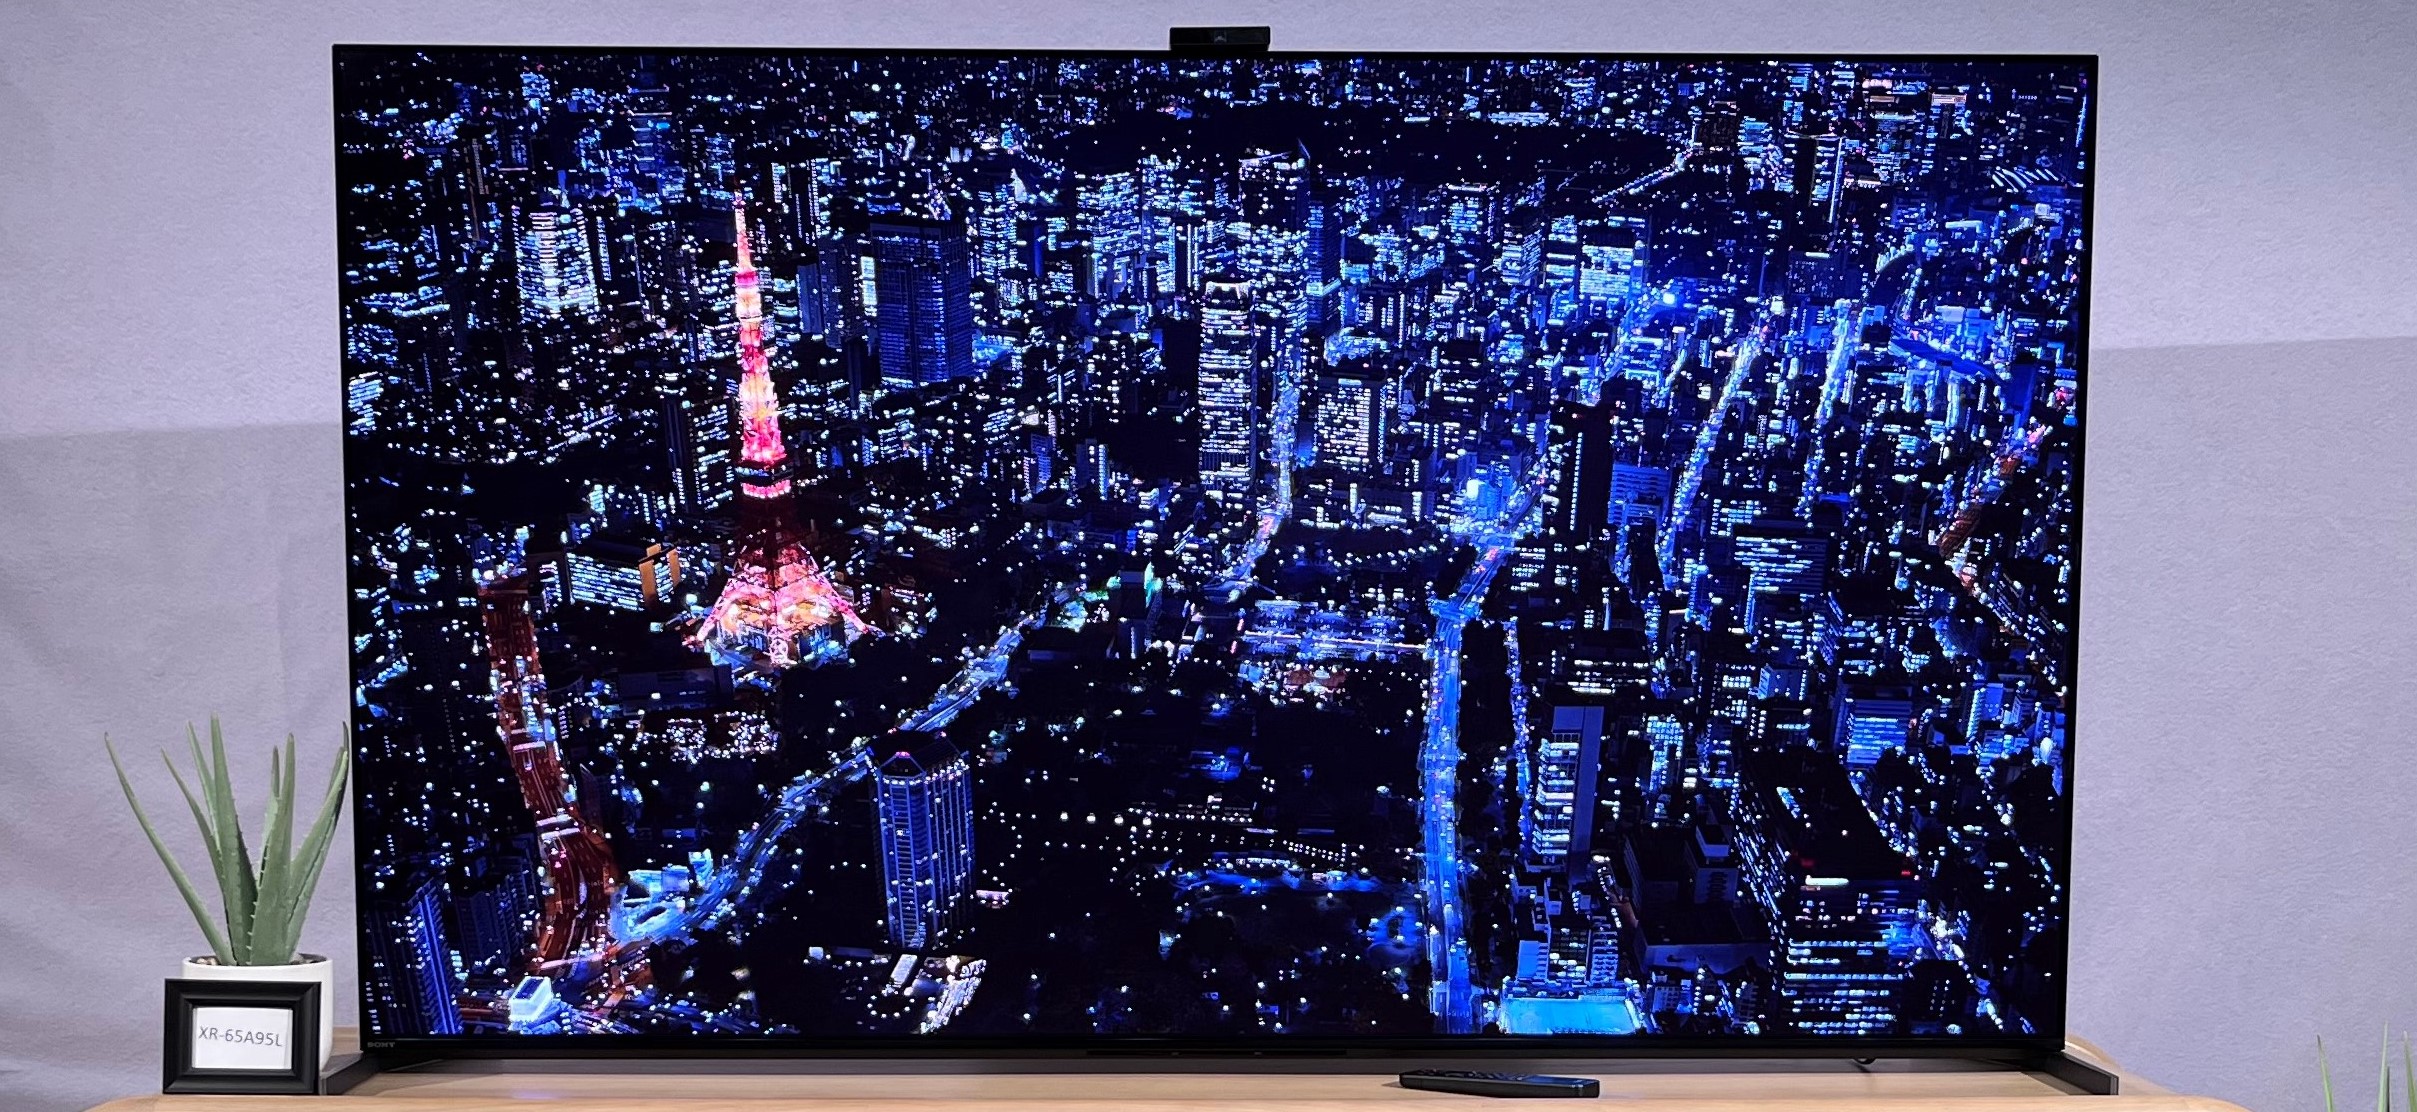 I saw Sony's new A95L QD-OLED, and it could be the best 4K TV of 2023